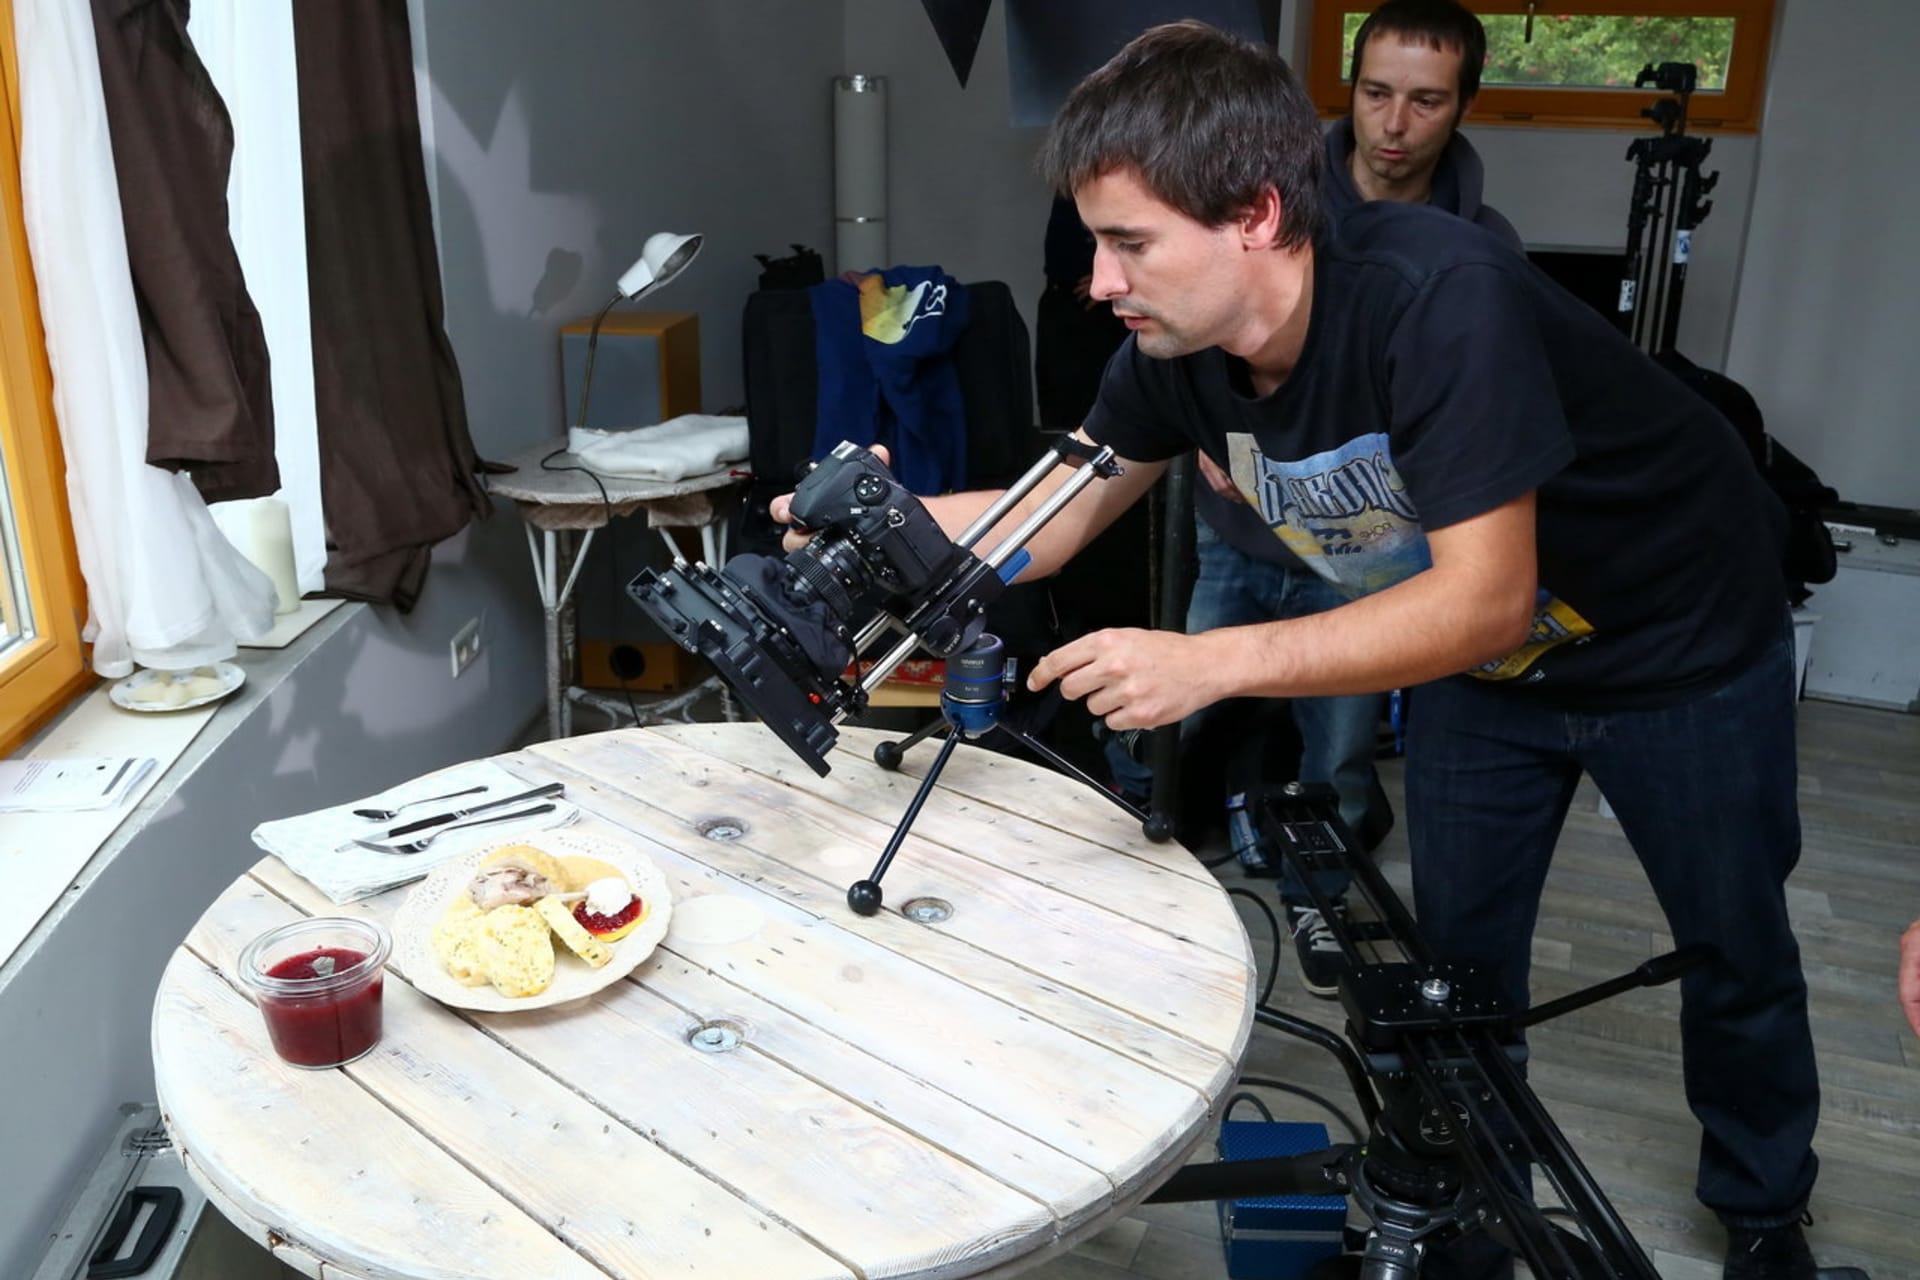 Záviděli jste někdy filmařům práci na pořadech o vaření? Mysleli jste si, že se při ní i hojně ochutnává? Omyl. Naservírovaný pokrm ještě dlouze stydne před objektivy kamery a foťáku.